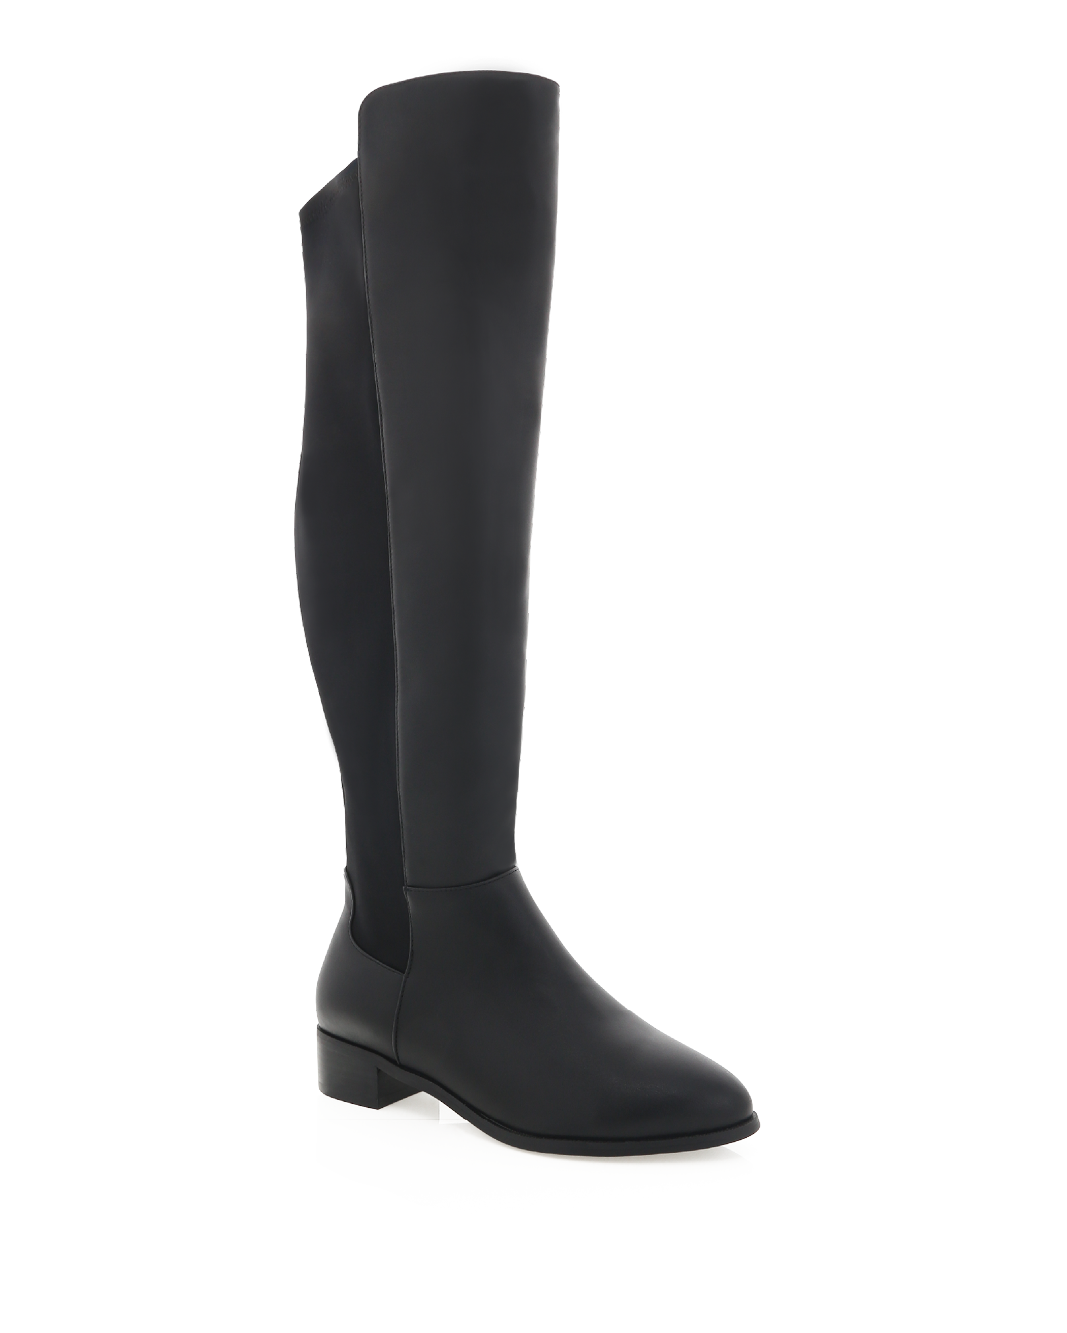 IDAHO CURVE - BLACK-Boots-Billini-Billini